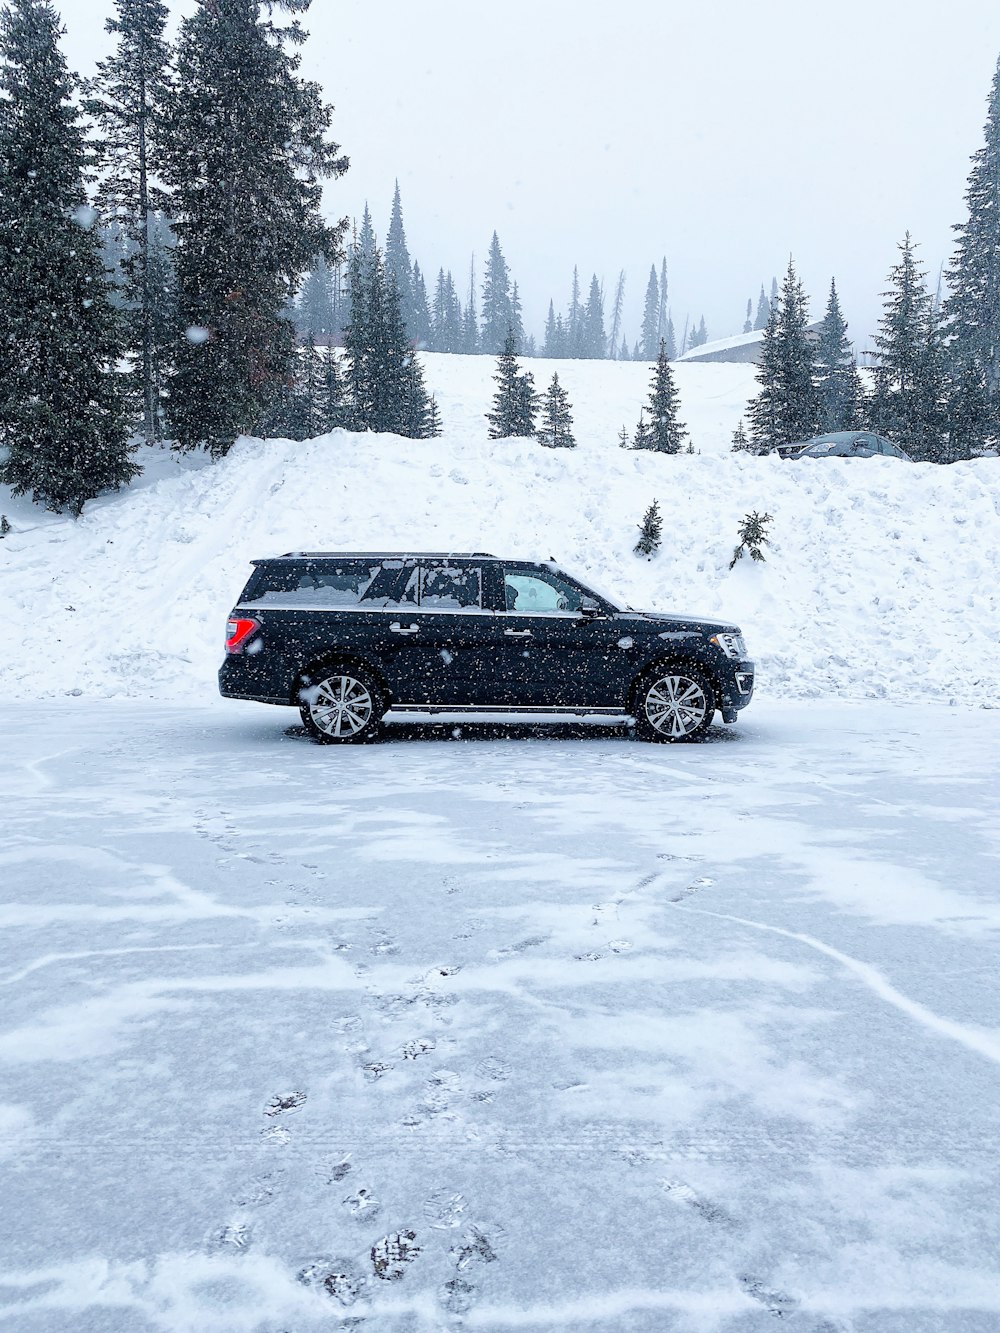 Schwarzer SUV auf schneebedecktem Untergrund